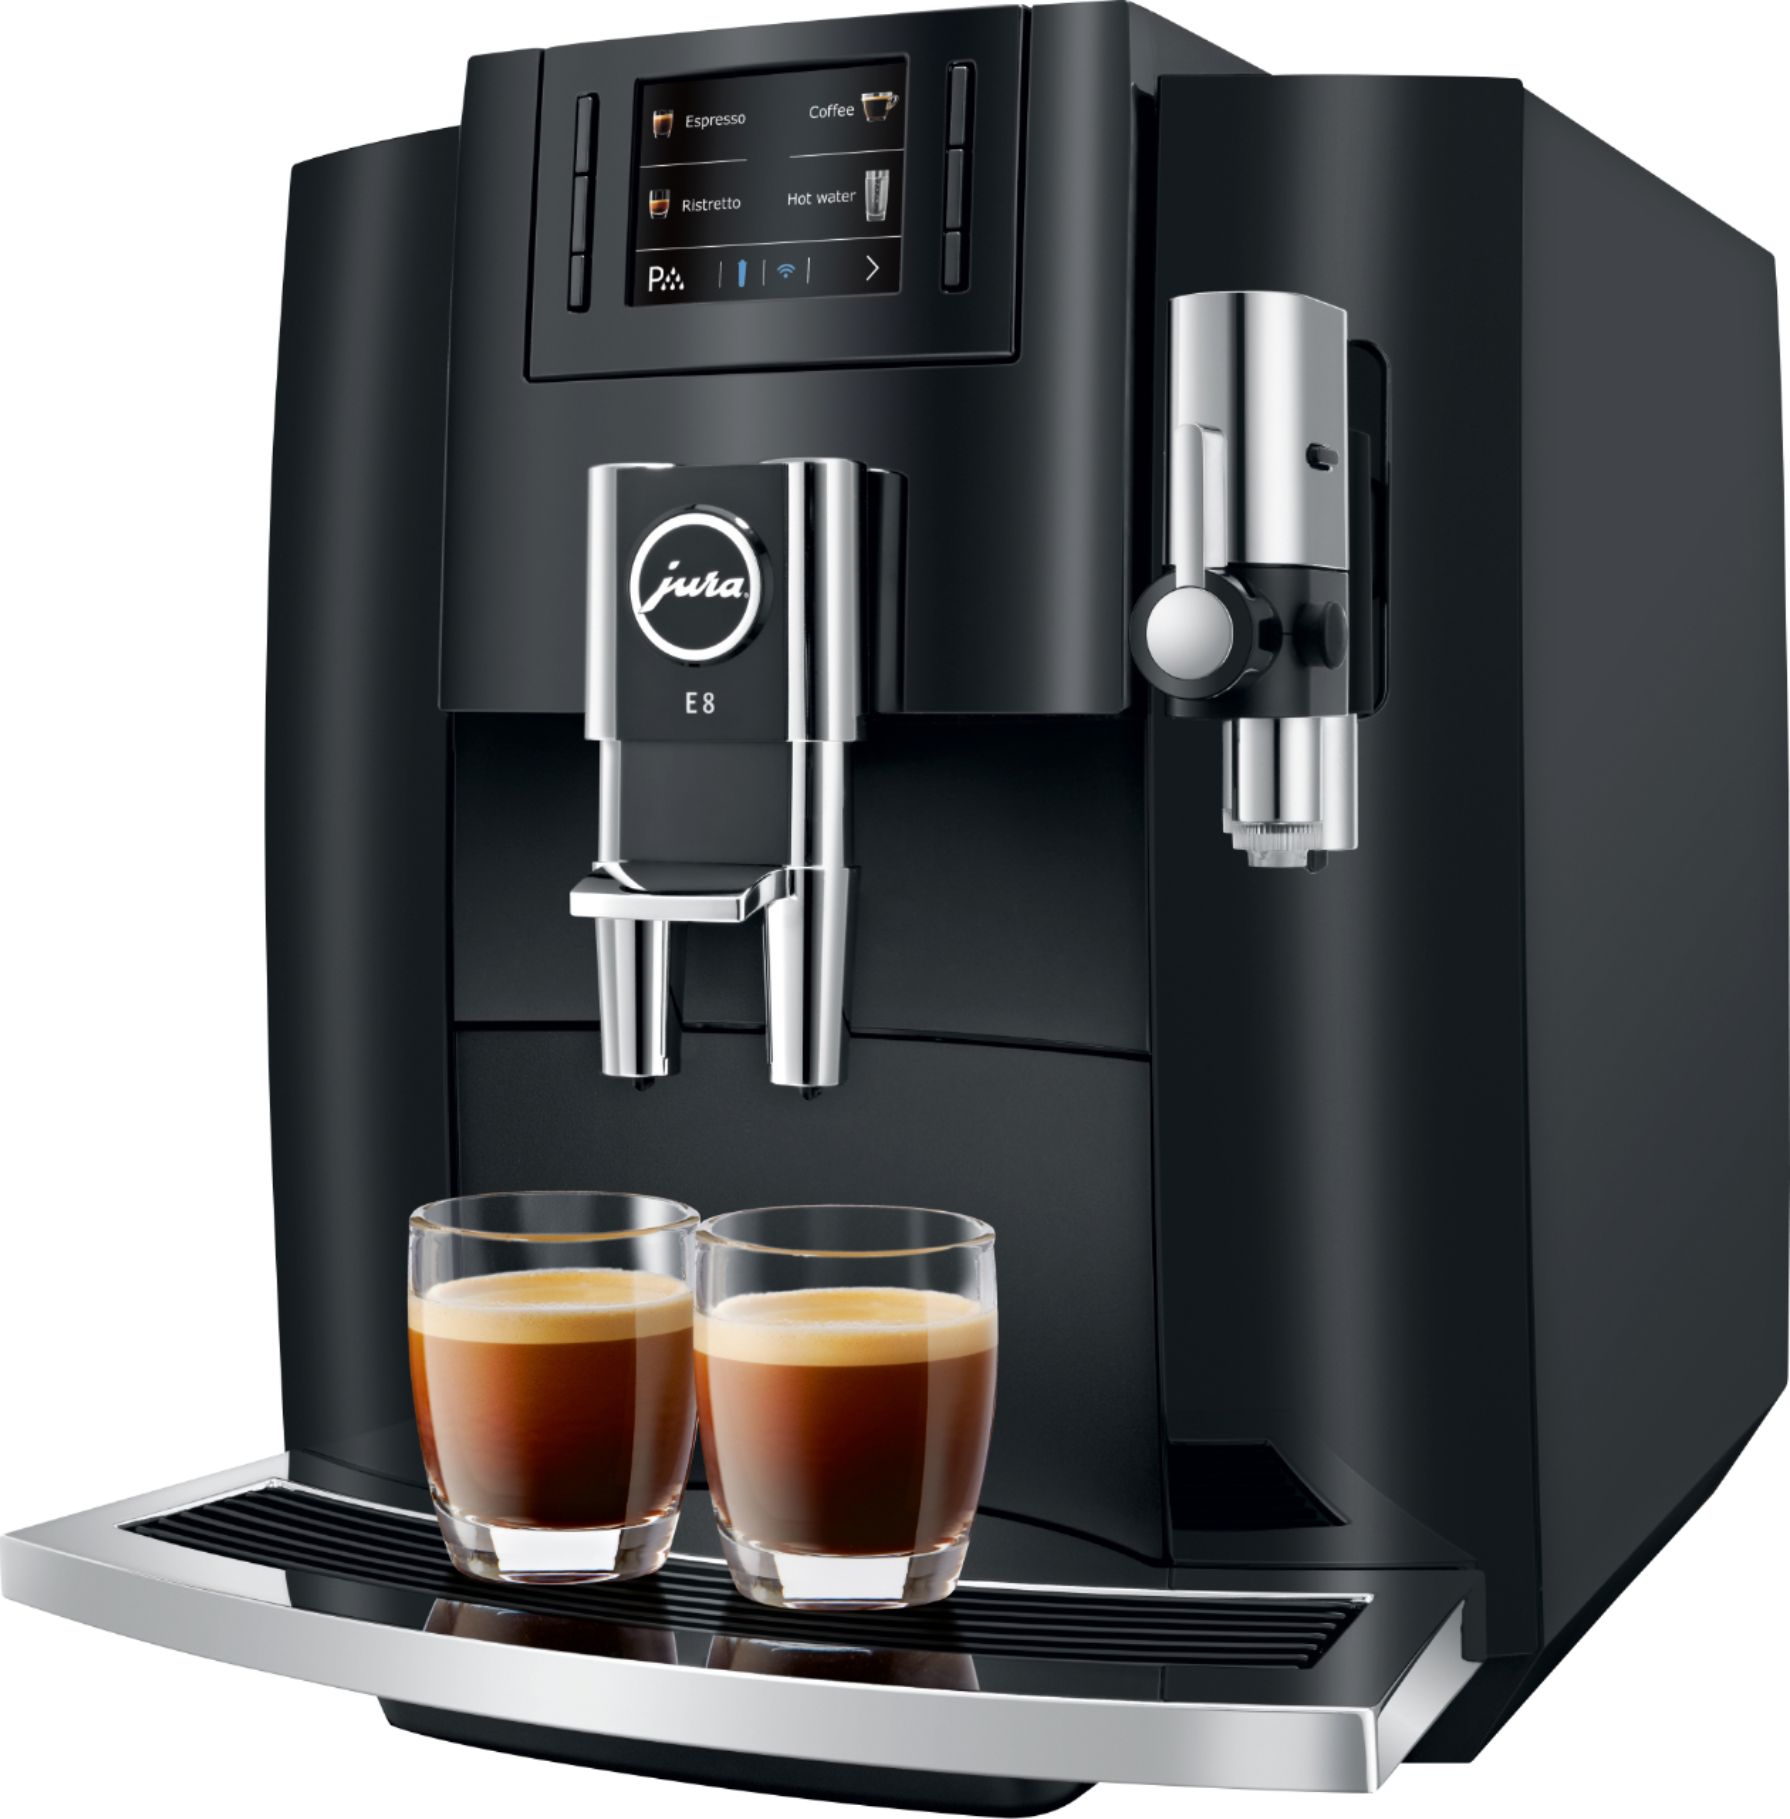 Left View: Jura - E8 12-Cup Automatic Coffee Machine - Piano Black